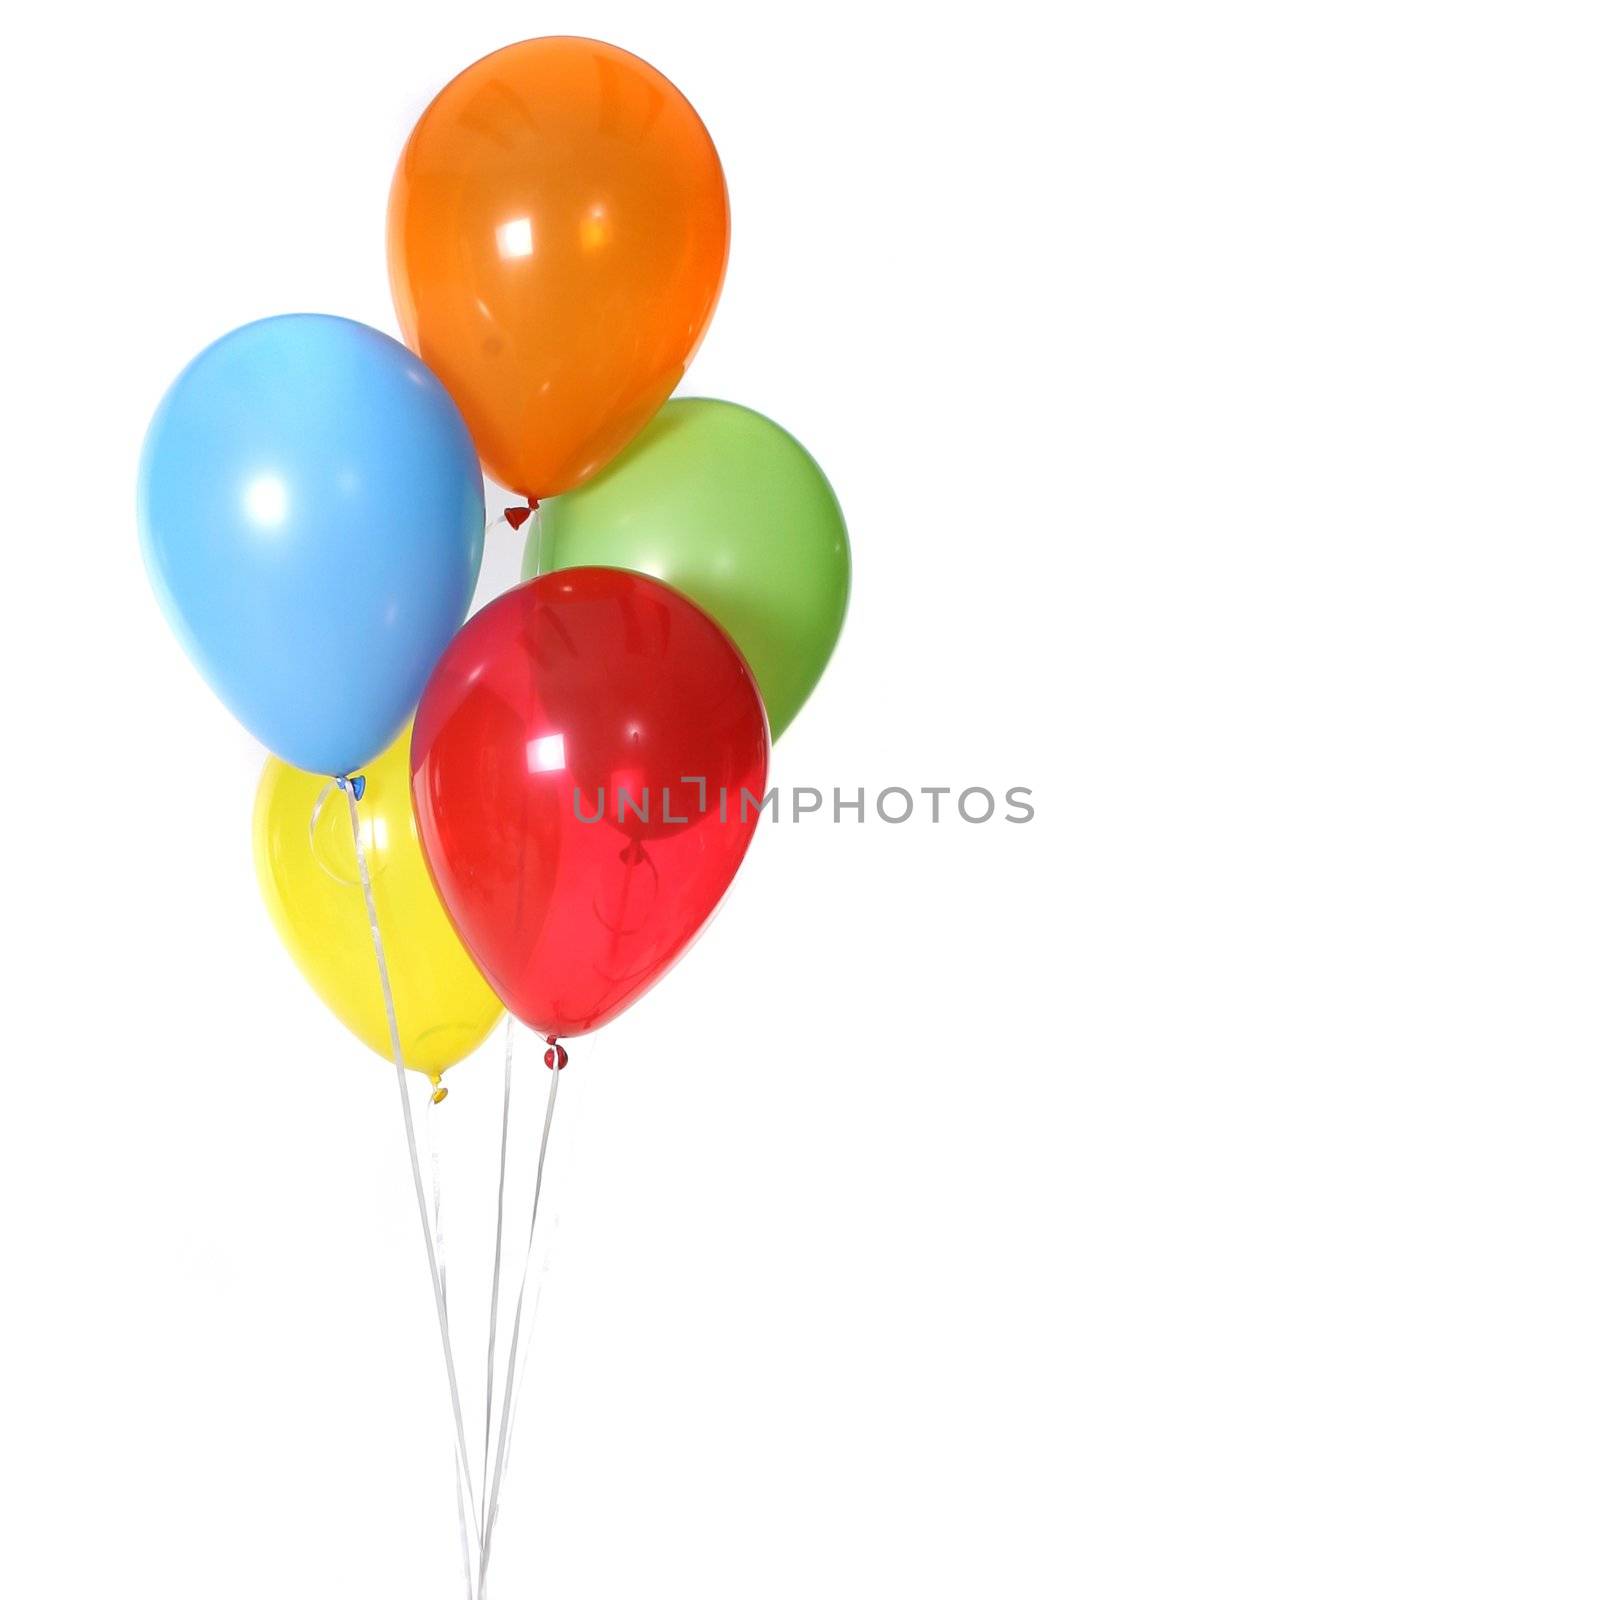 5 Birthday Celebration Balloons by tobkatrina